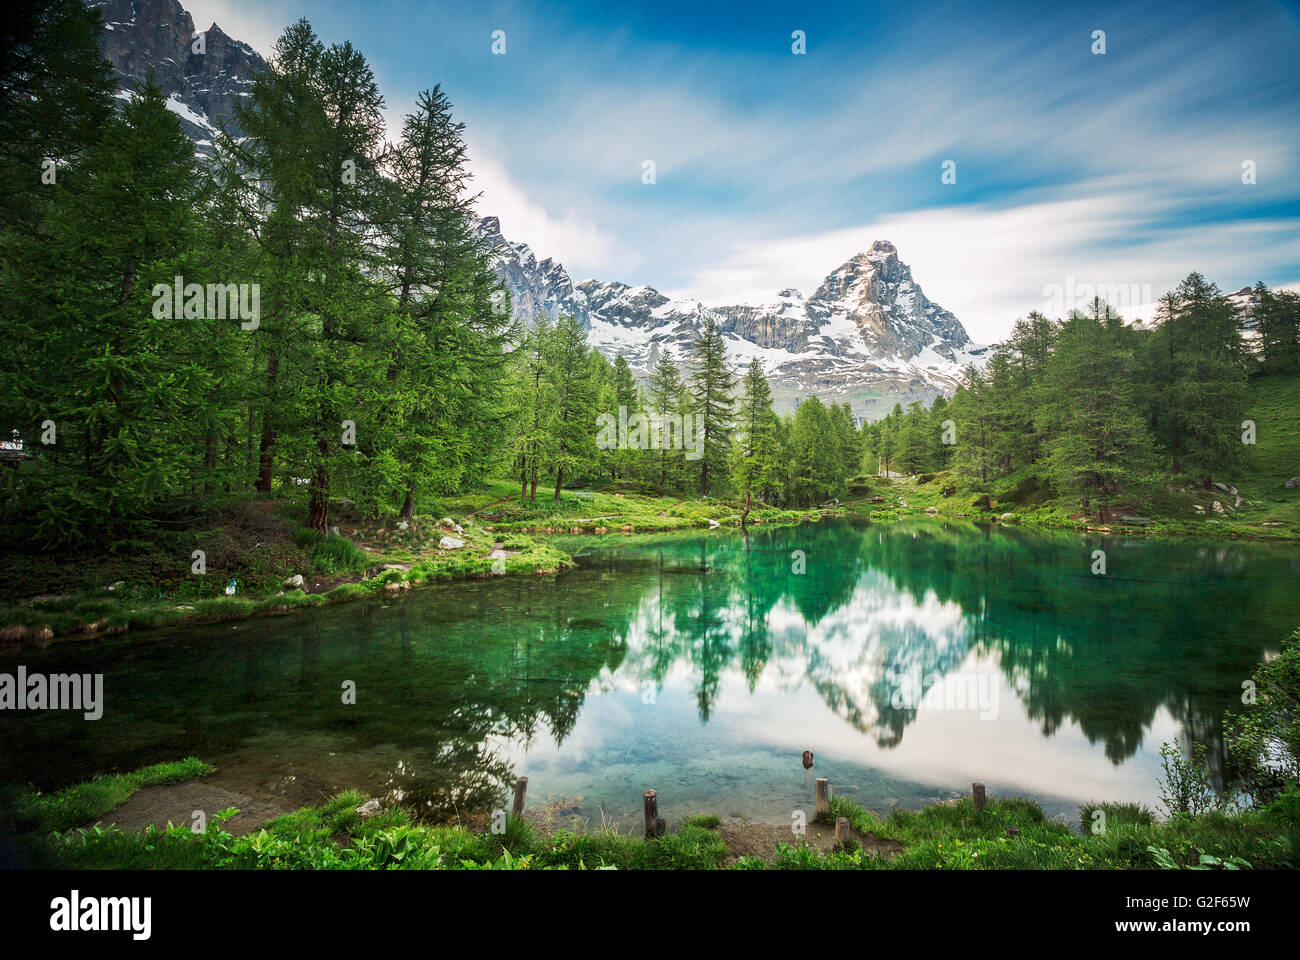 Cervino/ Matterhorn peak à Breuil-Cervinia, Valtournenche, vallée d'Aoste, Alpes, Italie Banque D'Images